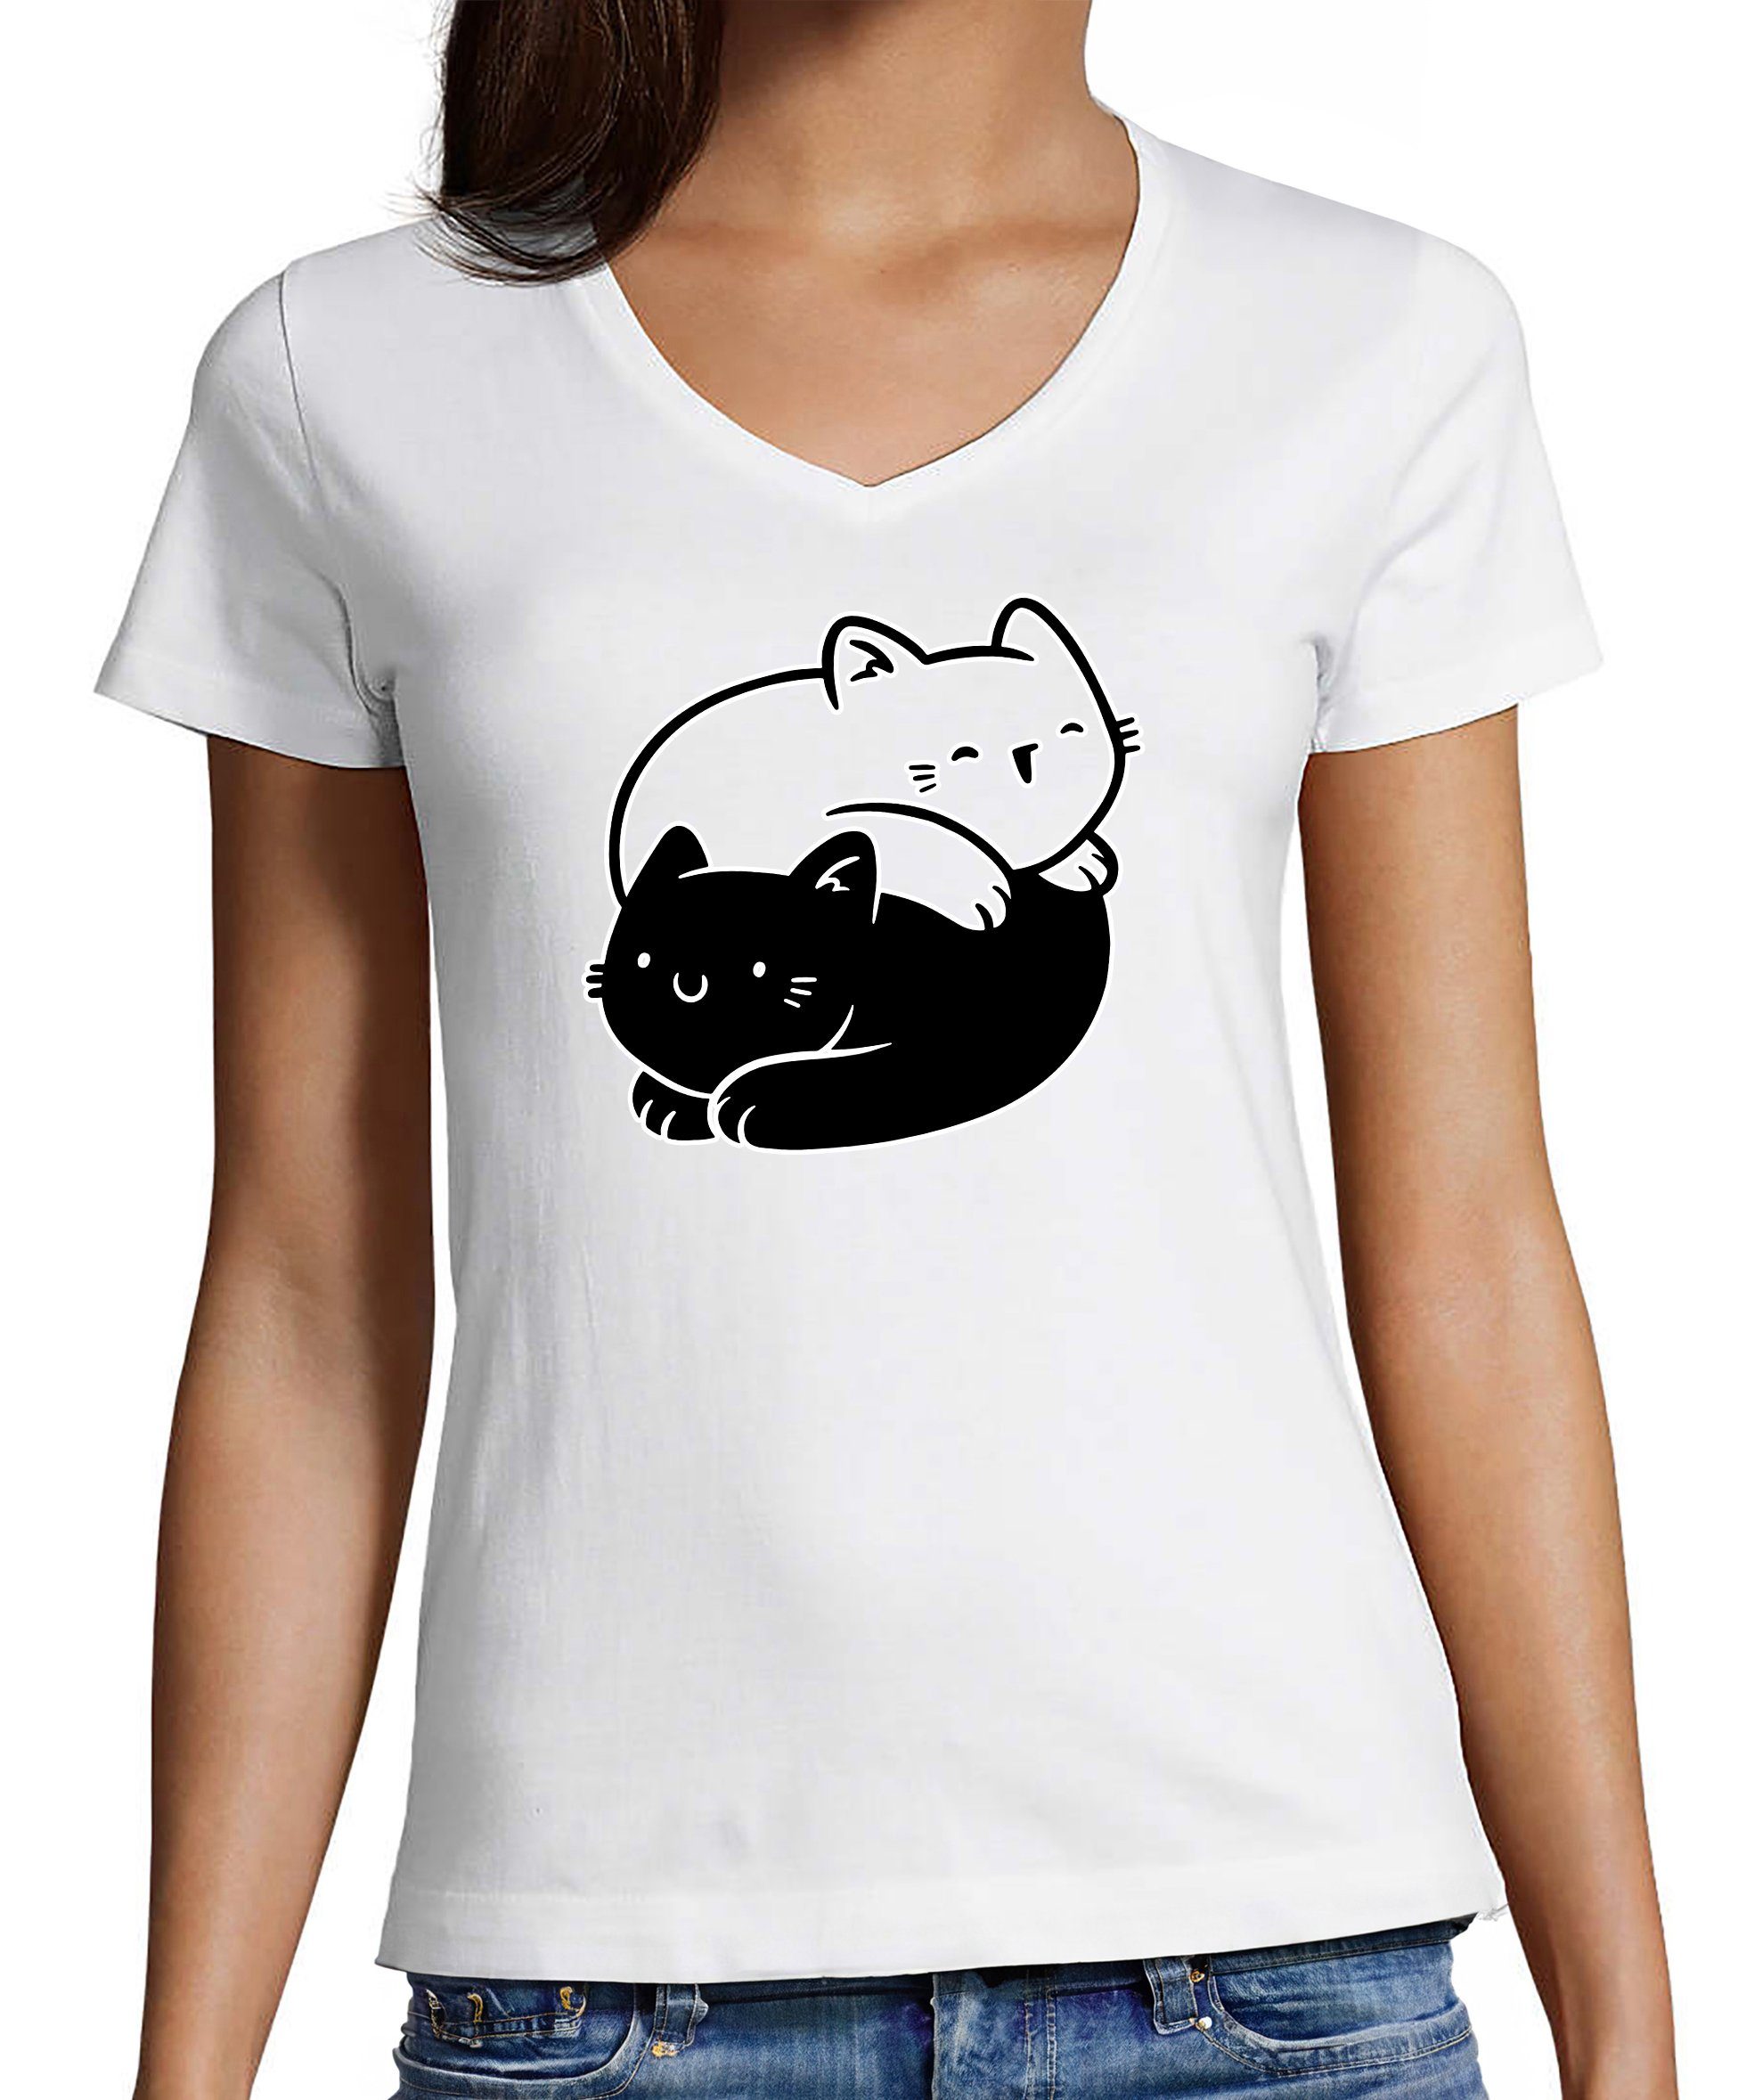 MyDesign24 T-Shirt Damen Katzen Print Shirt bedruckt - Yin Yang Katze Baumwollshirt mit Aufdruck, Slim Fit, i112 weiss